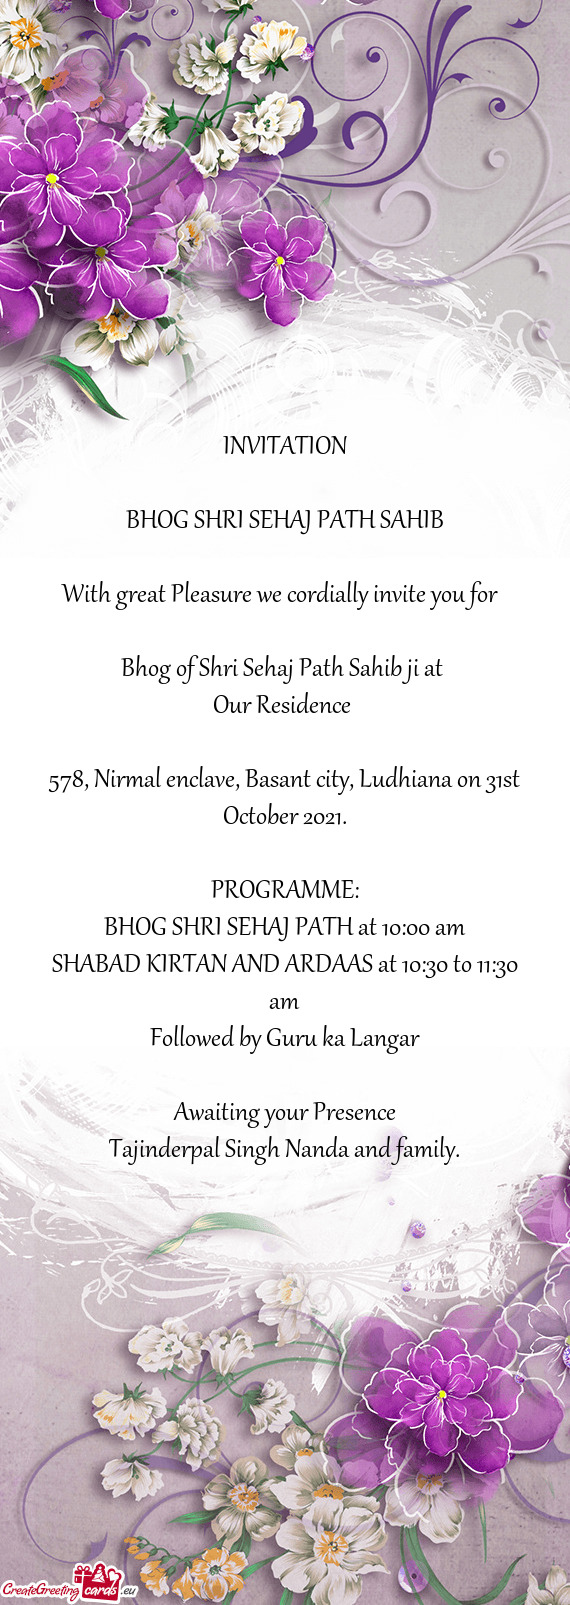 Bhog of Shri Sehaj Path Sahib ji at